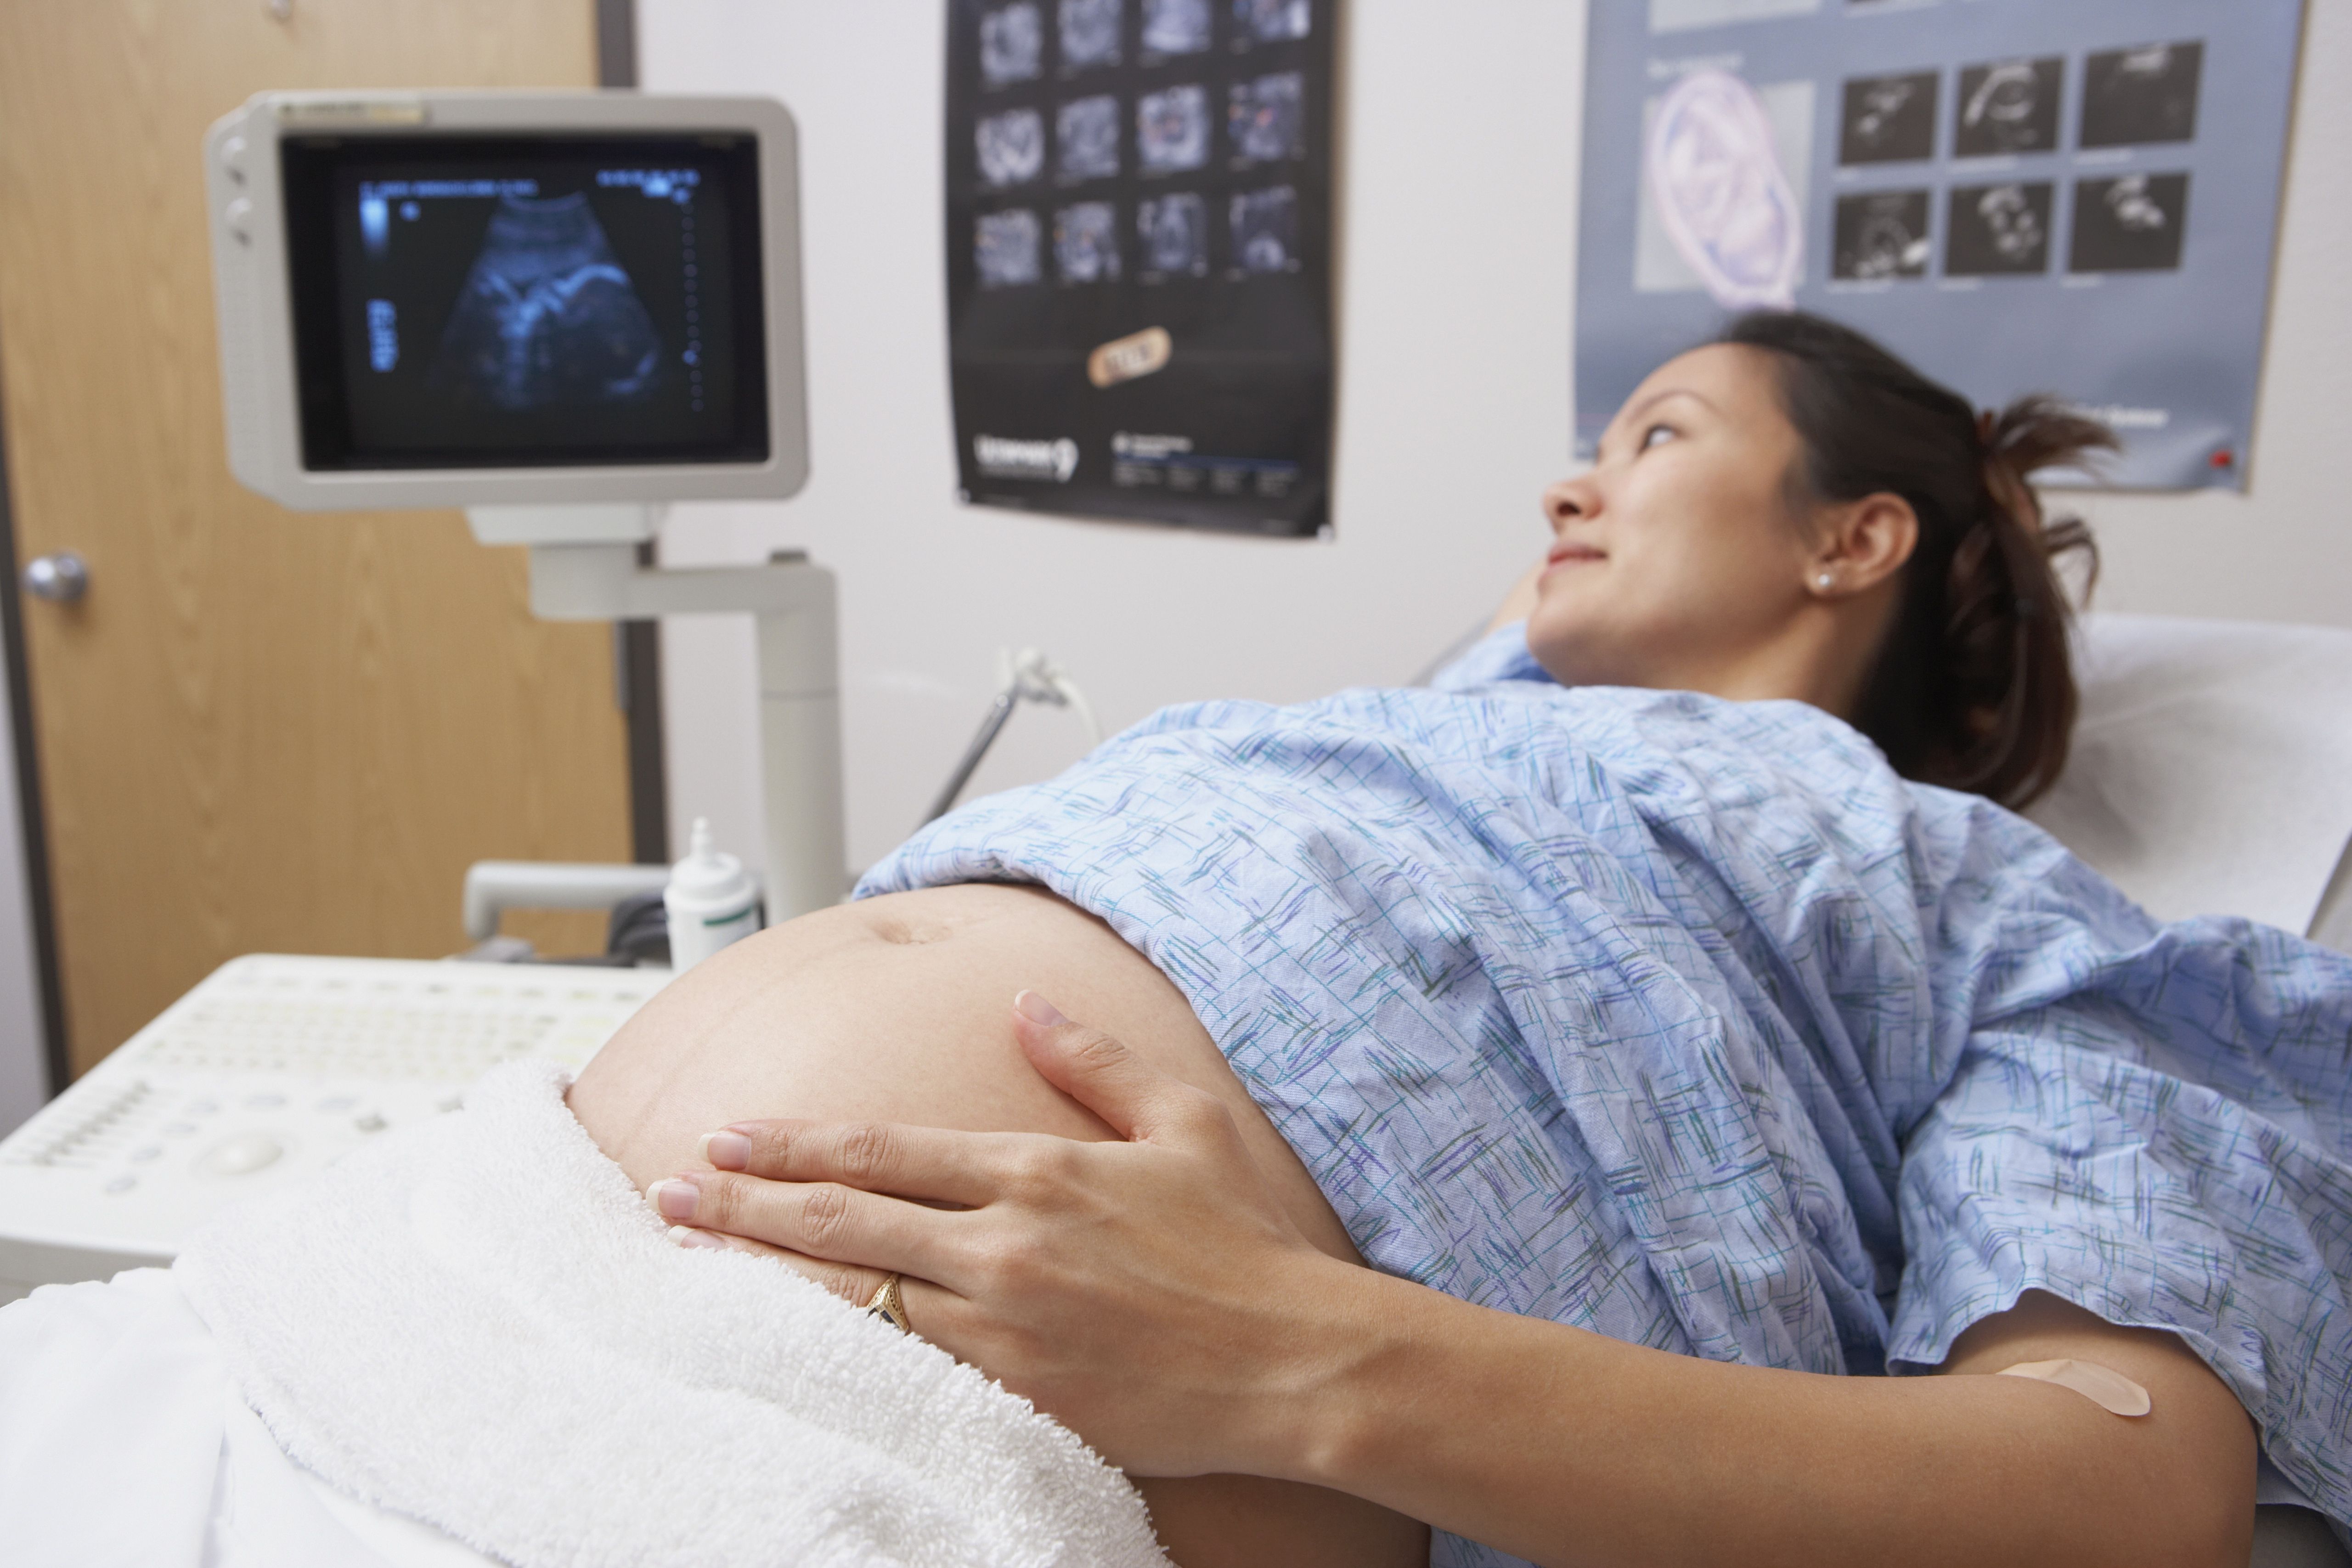 zwangere vrouwen zijn ondervoed